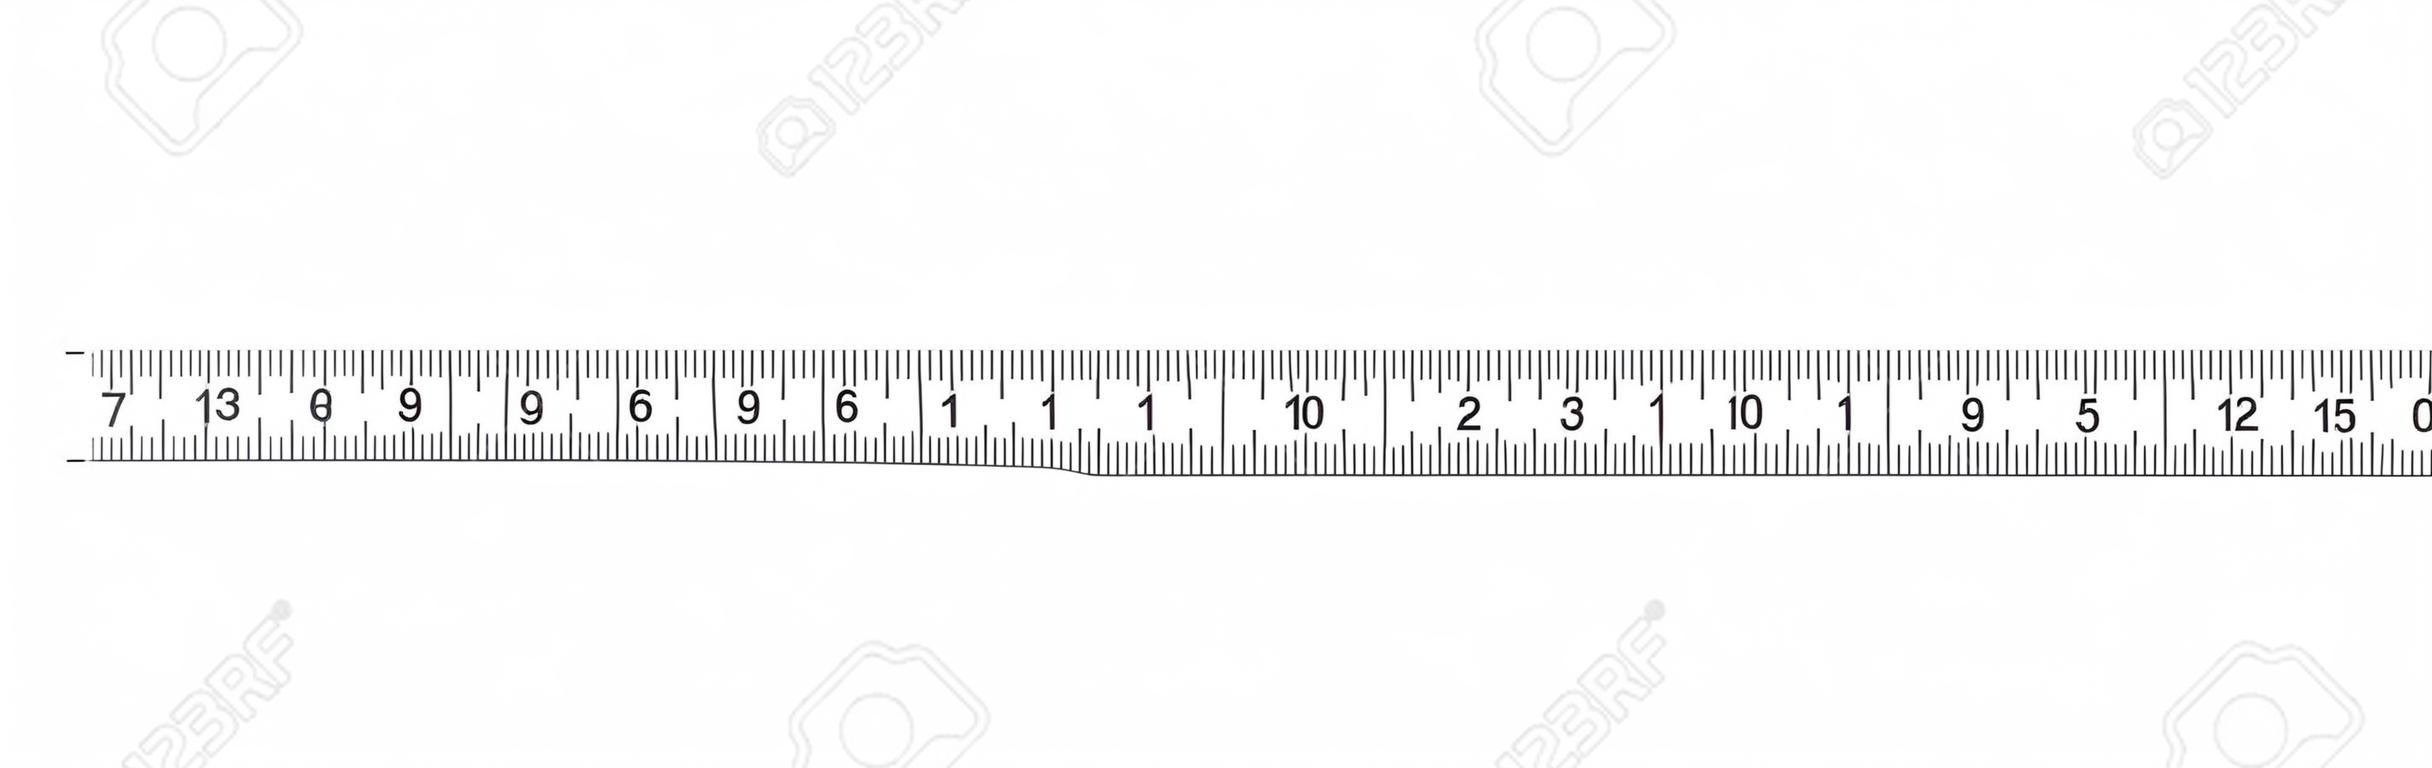 눈금자 20cm. 측정 도구. 눈금자 졸업. 눈금자 그리드 20 및 1cm. 크기 표시 단위. 미터법 센티미터 크기 표시기. 벡터 EPS10